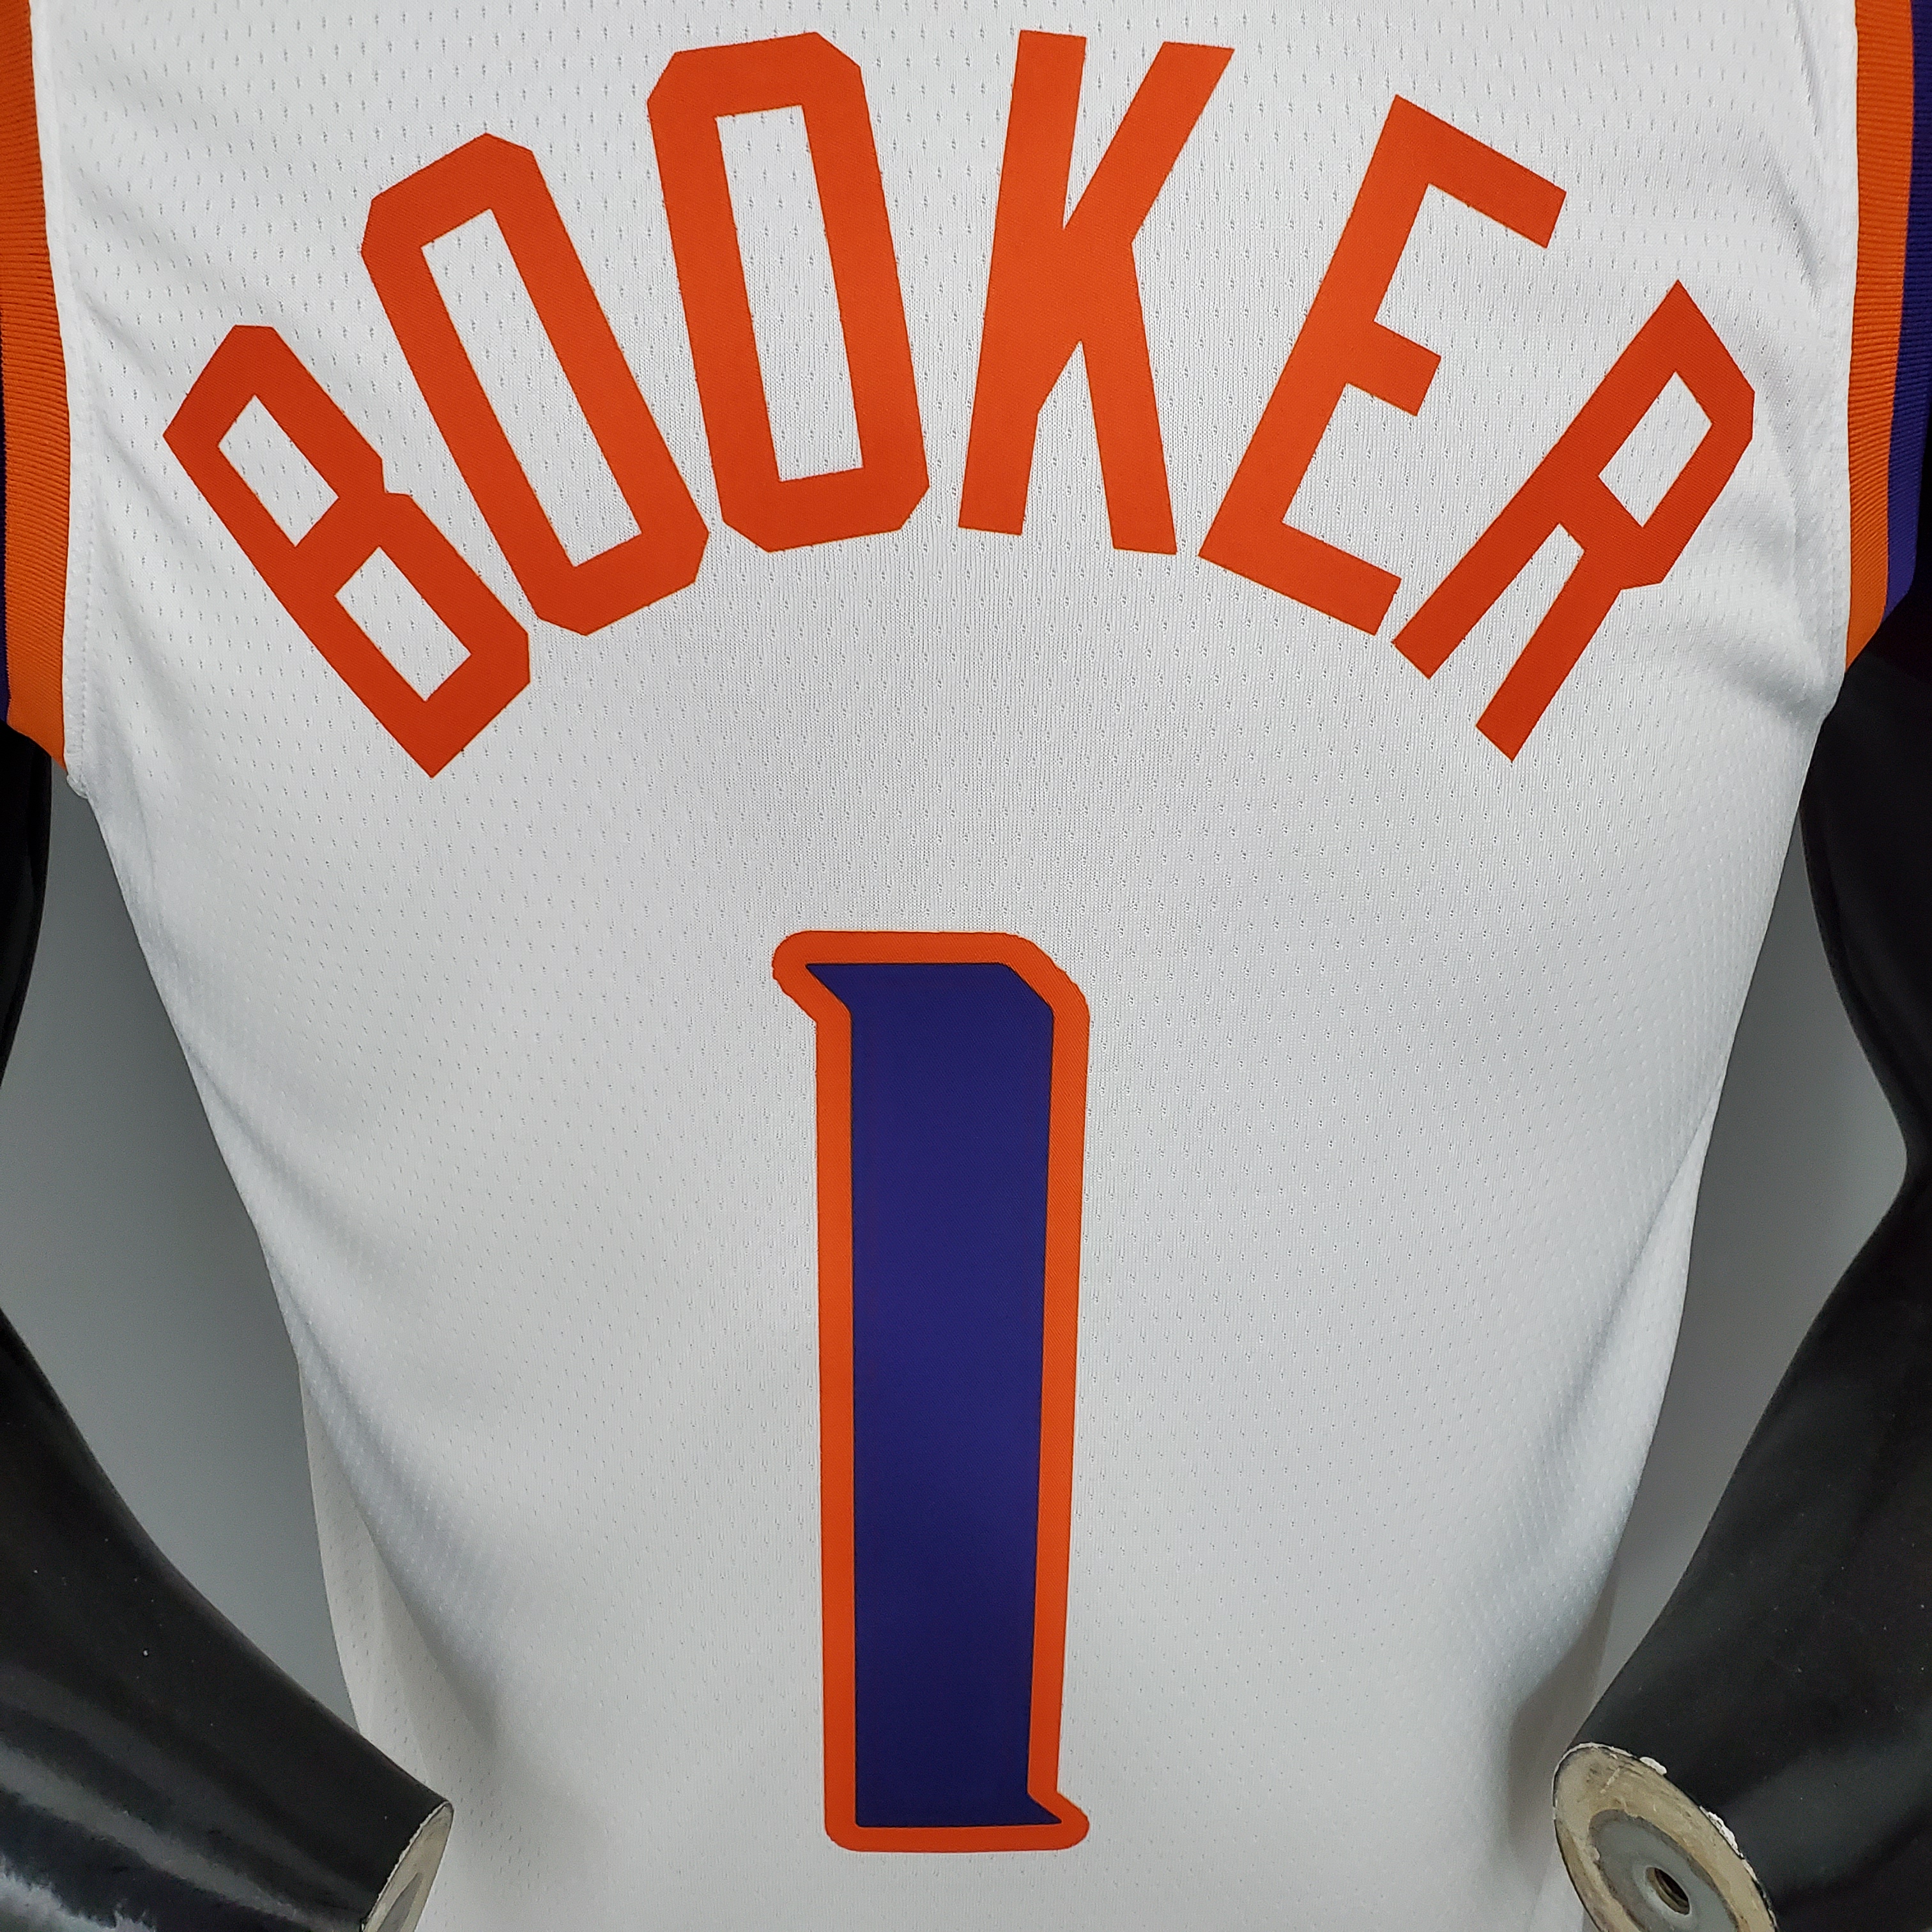 BOOKER#1 Phoenix Suns White NBA Jersey